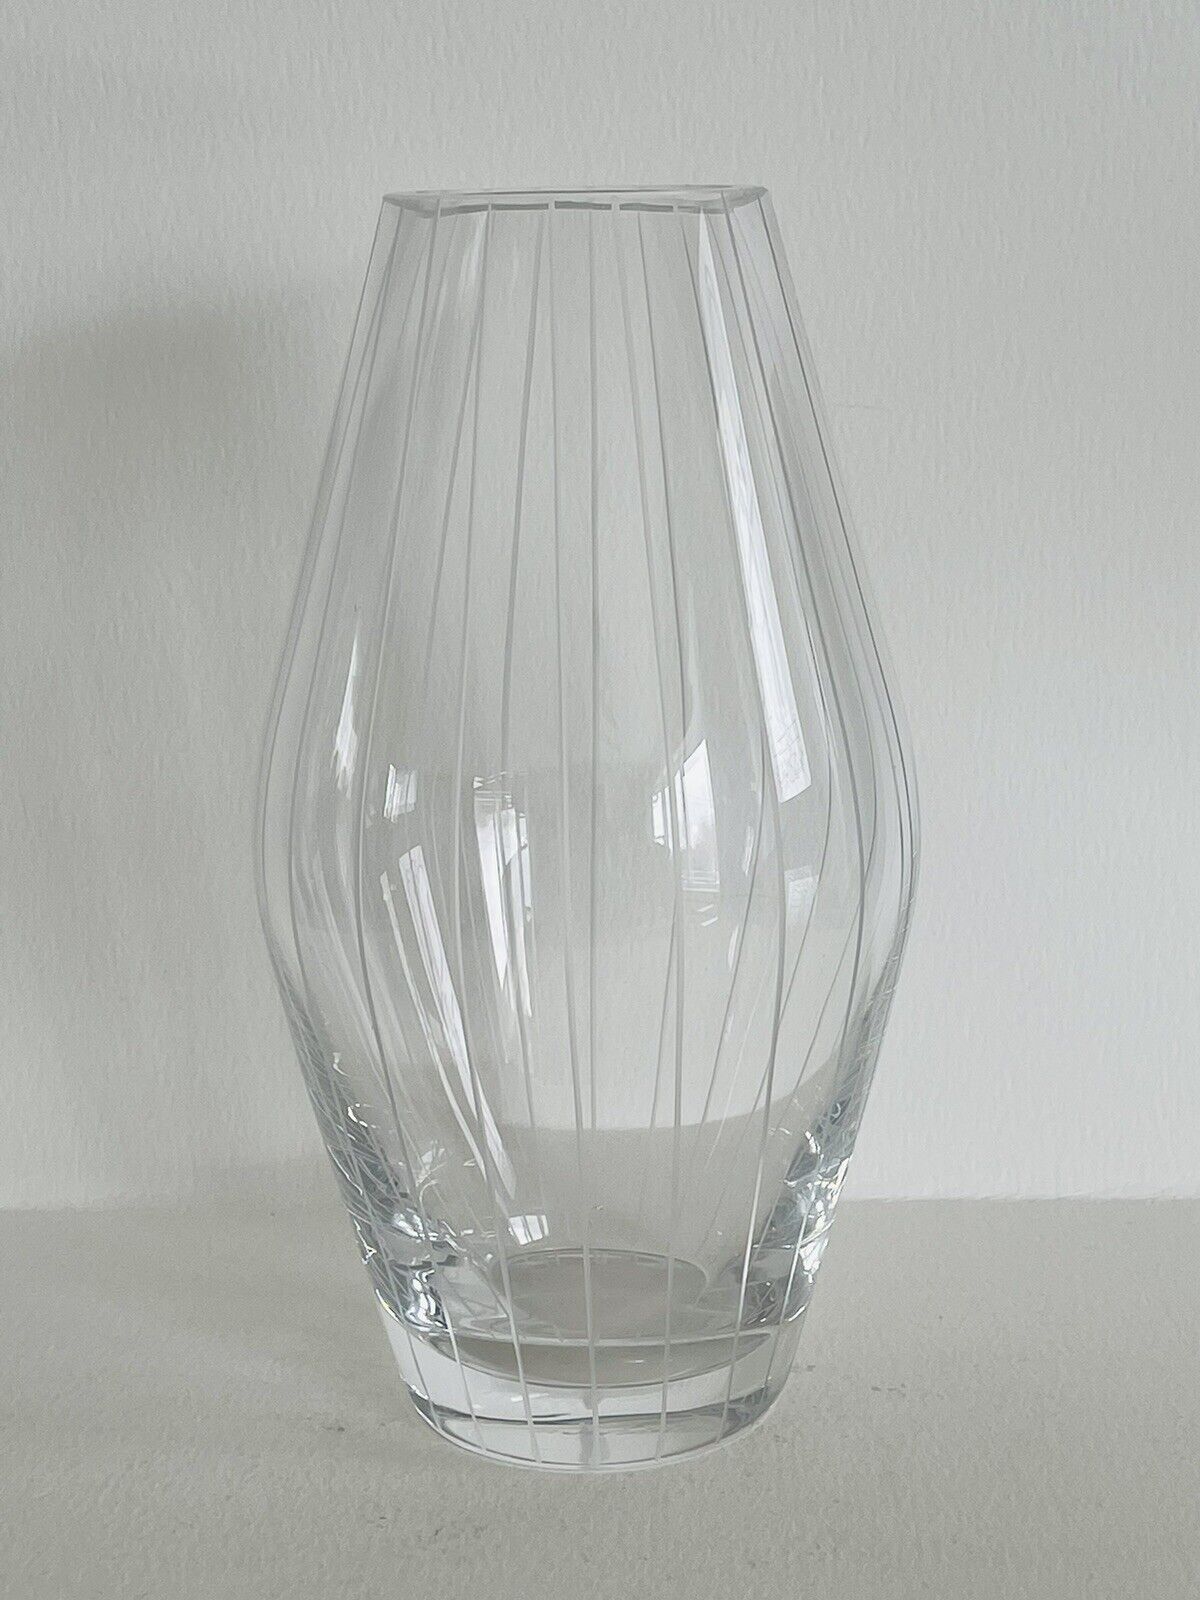 1980s Handblown Art Glass Vase “Linear” By Richard Meier For Nan Swid